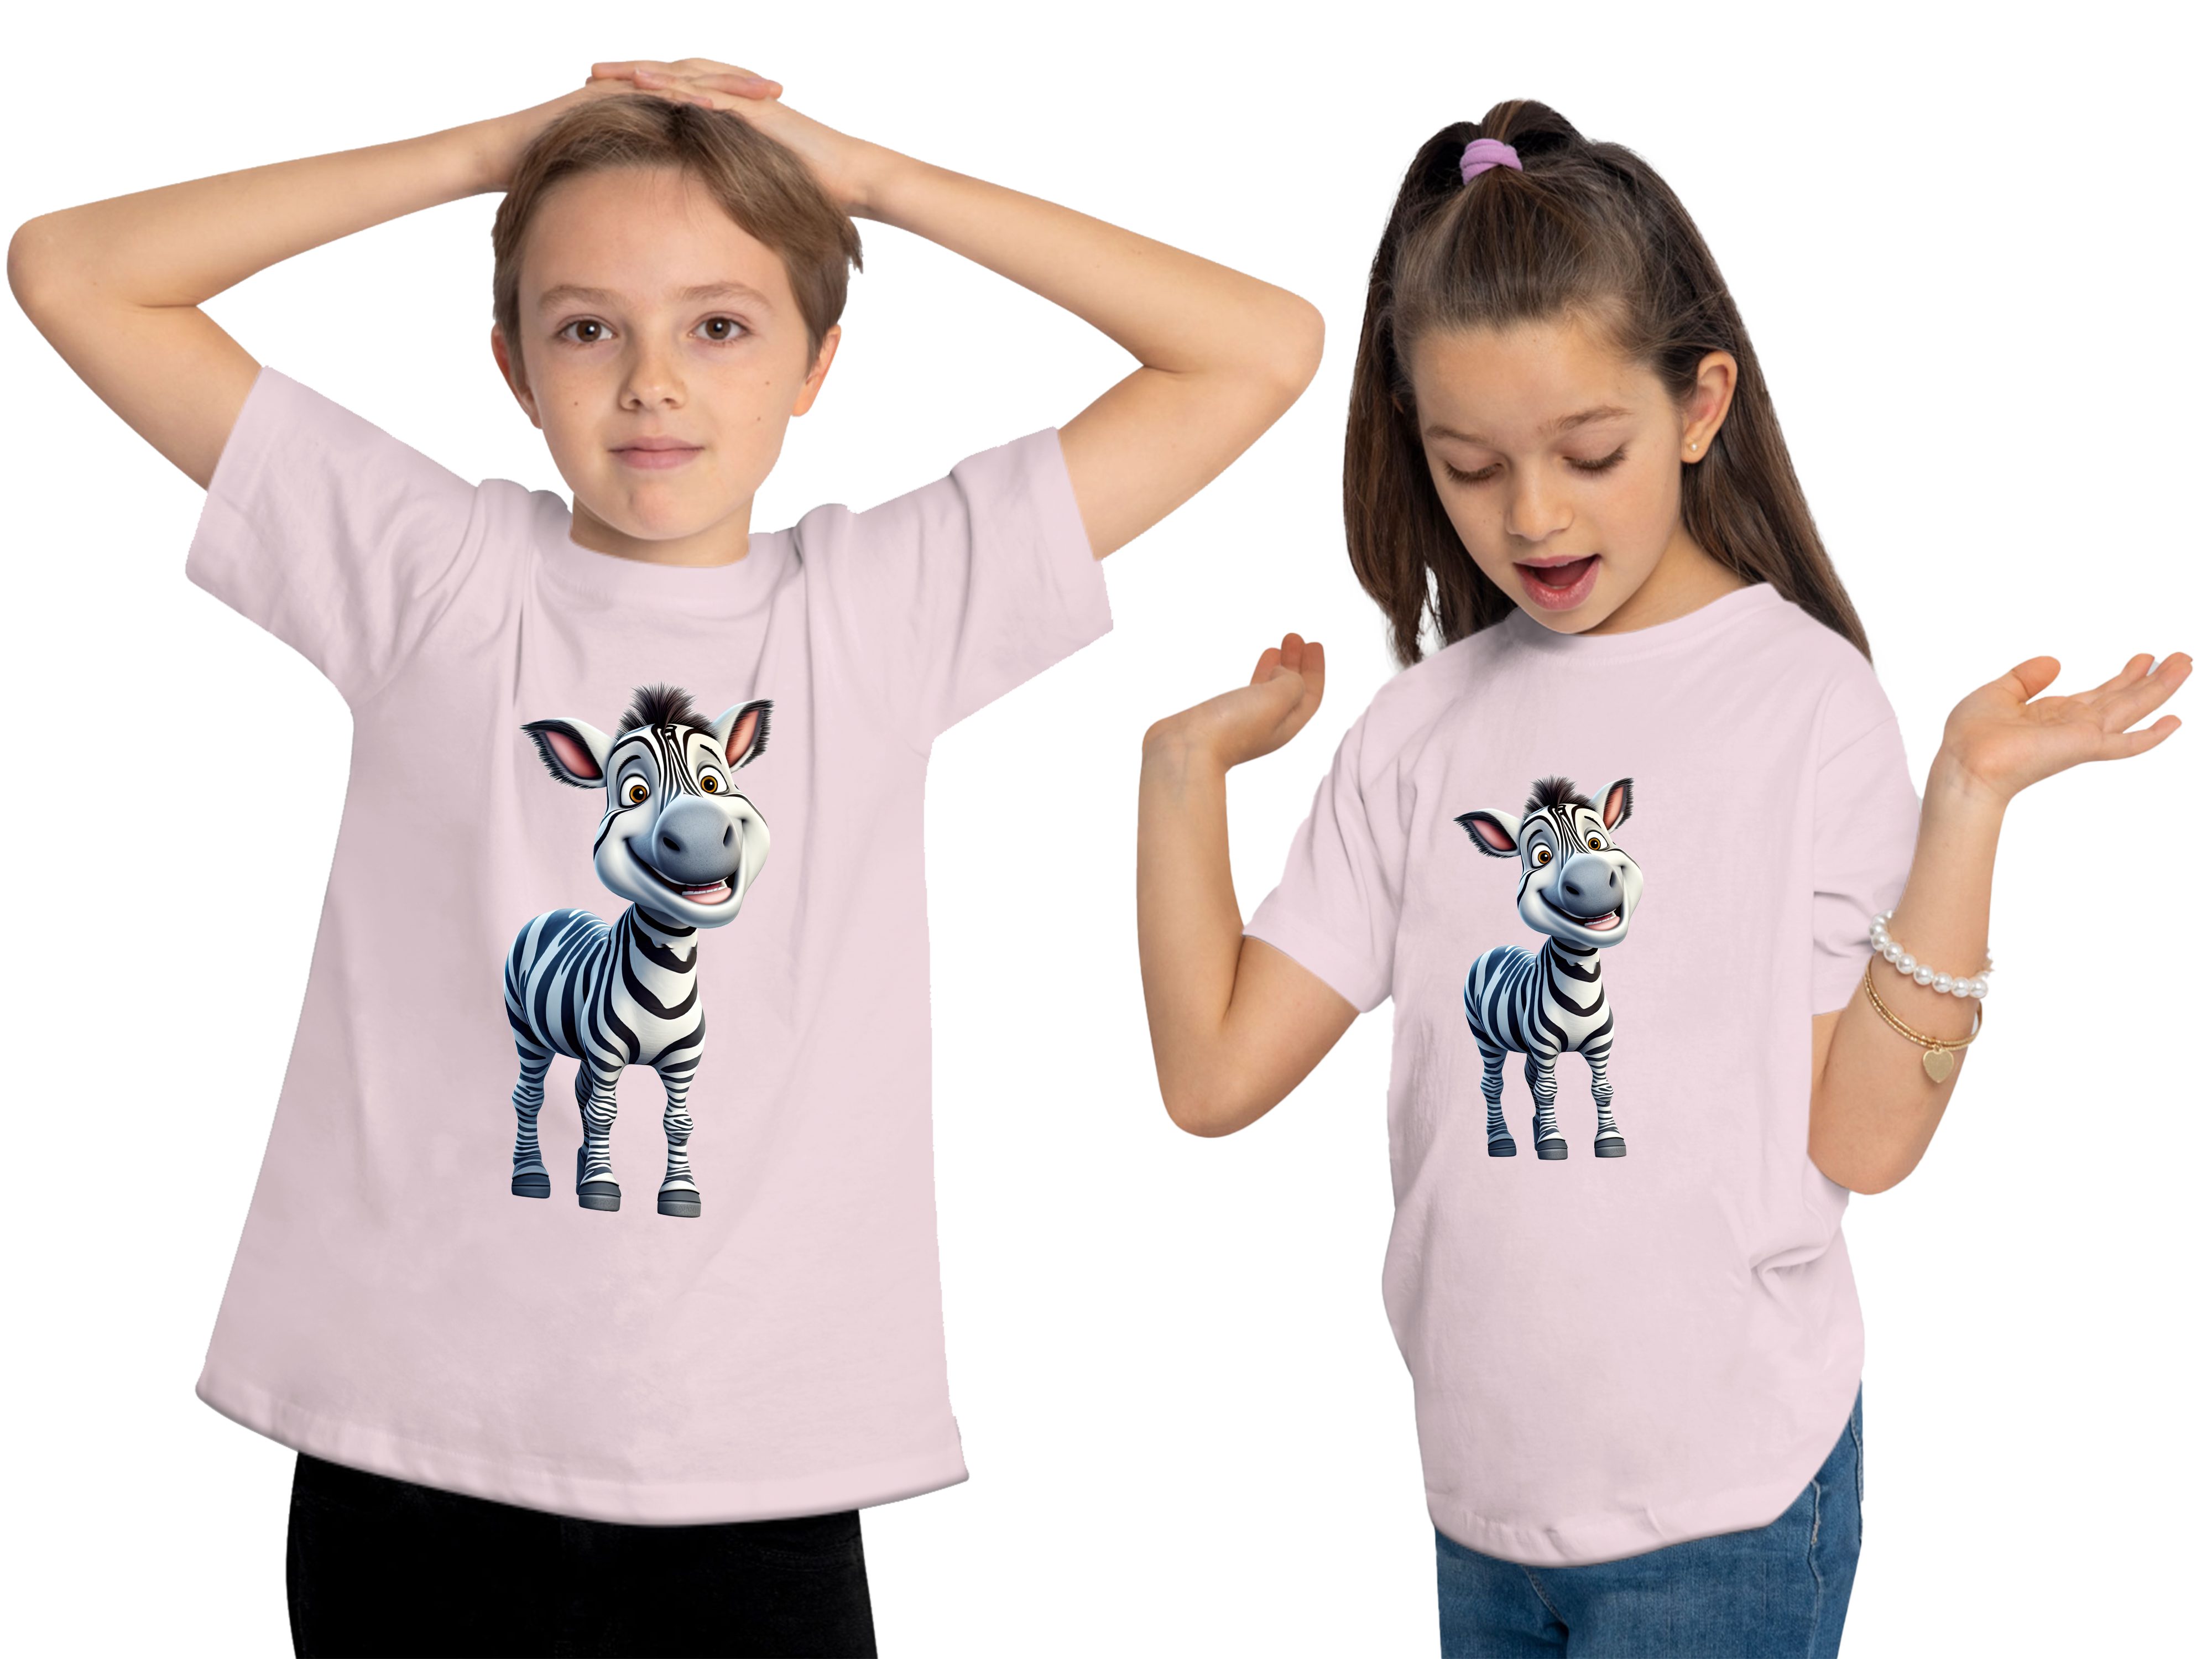 mit Aufdruck, Wildtier T-Shirt Zebra Print - Shirt Baumwollshirt MyDesign24 Baby i280 bedruckt rosa Kinder